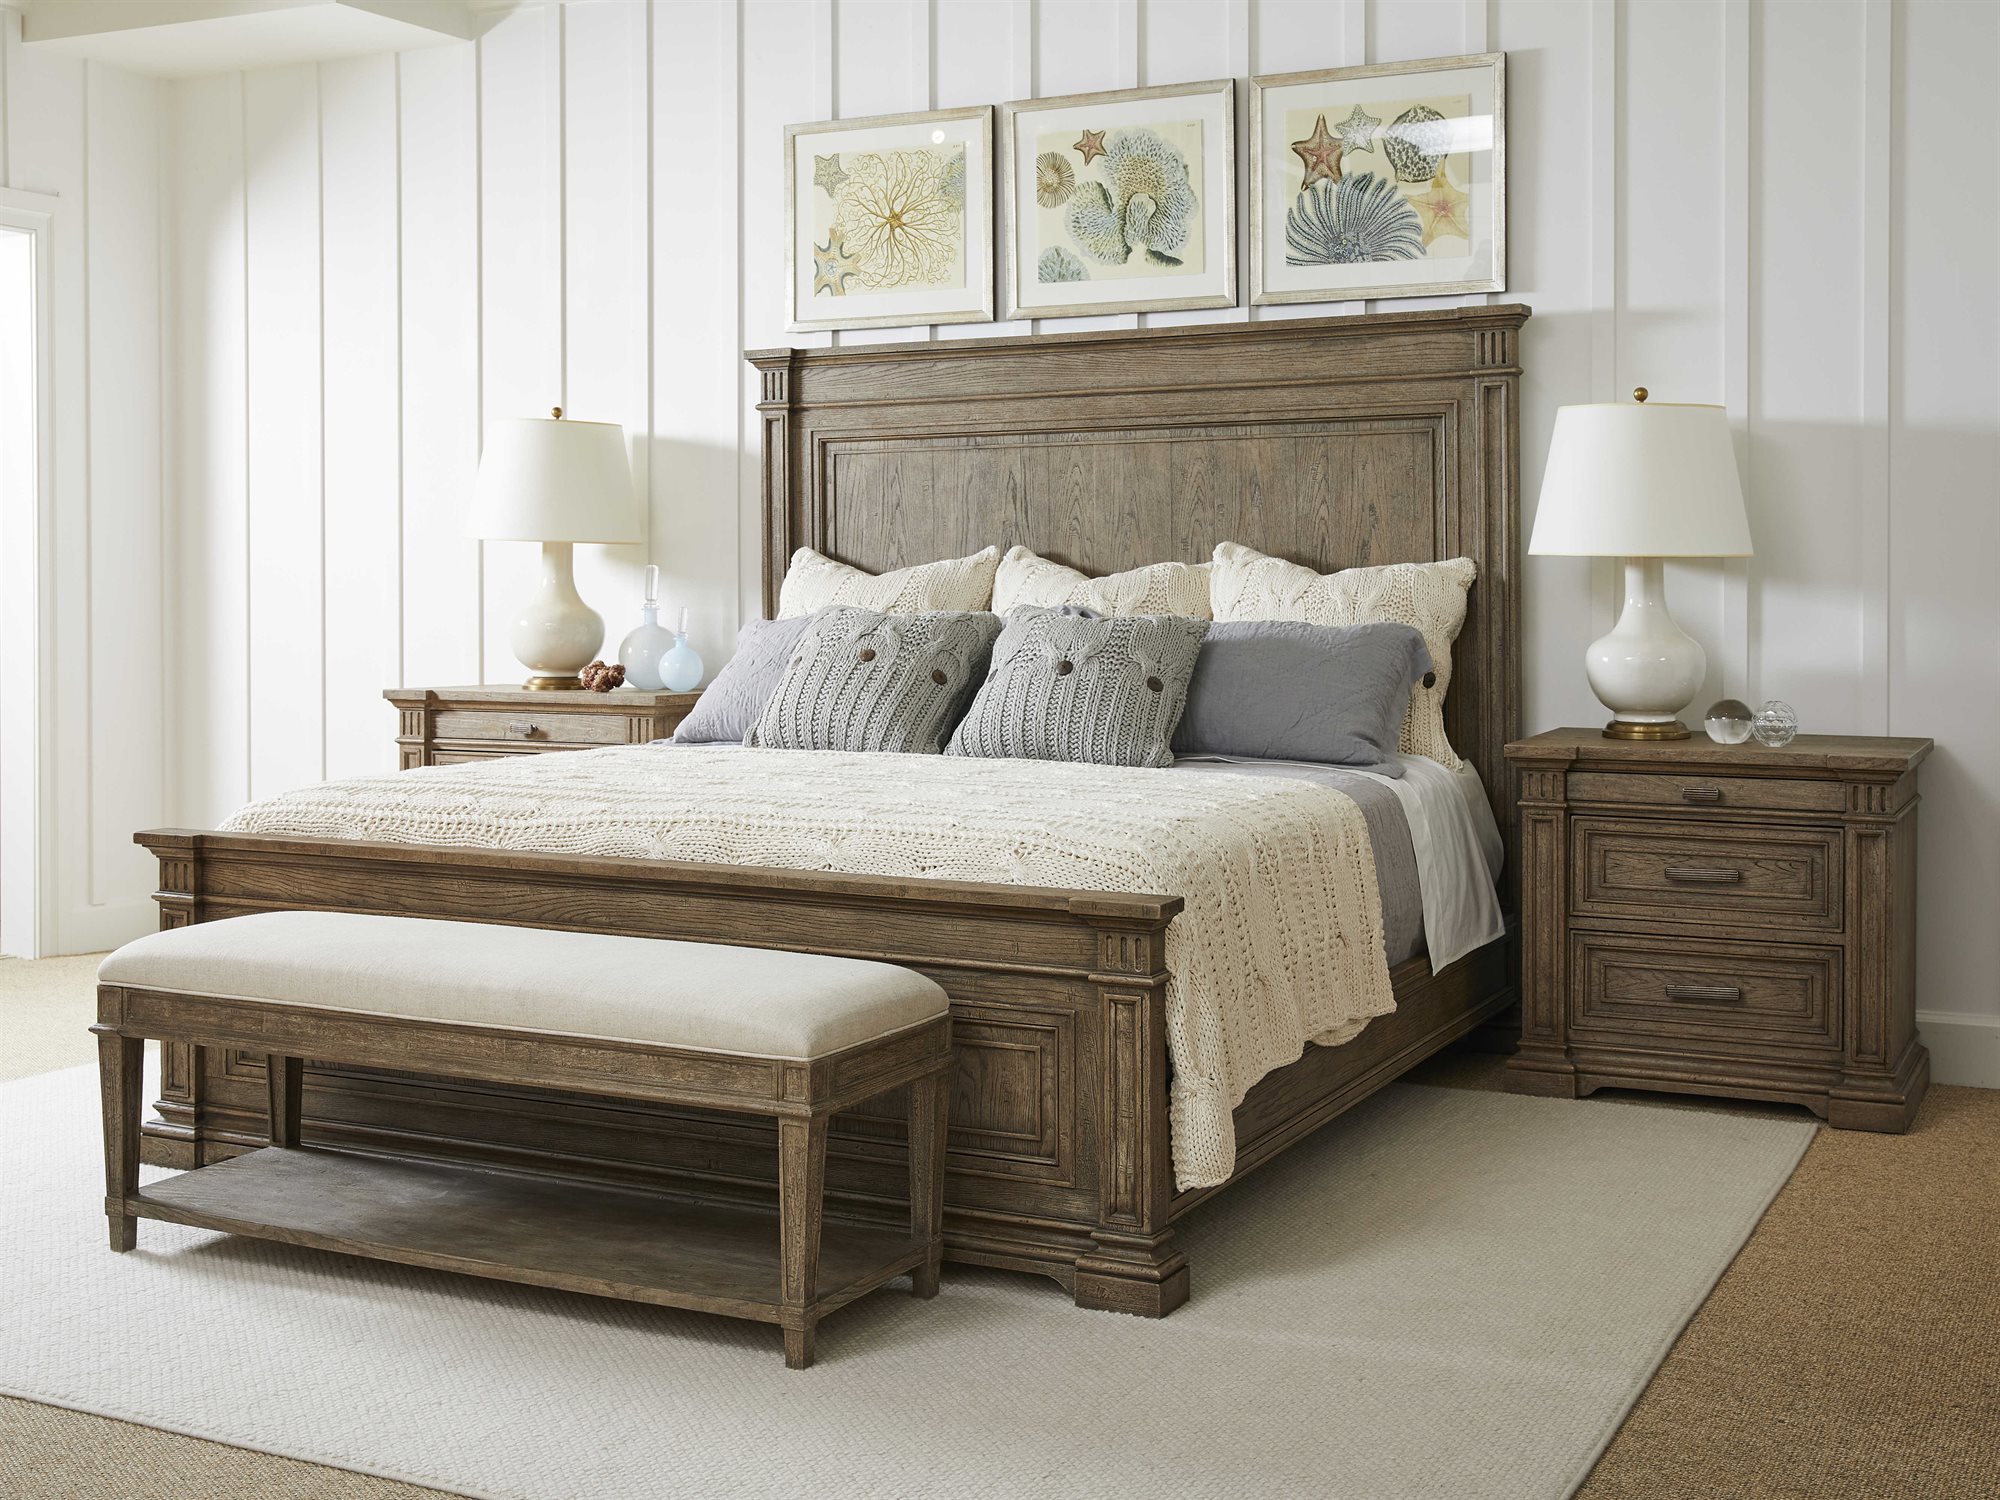 stanley bedroom furniture used